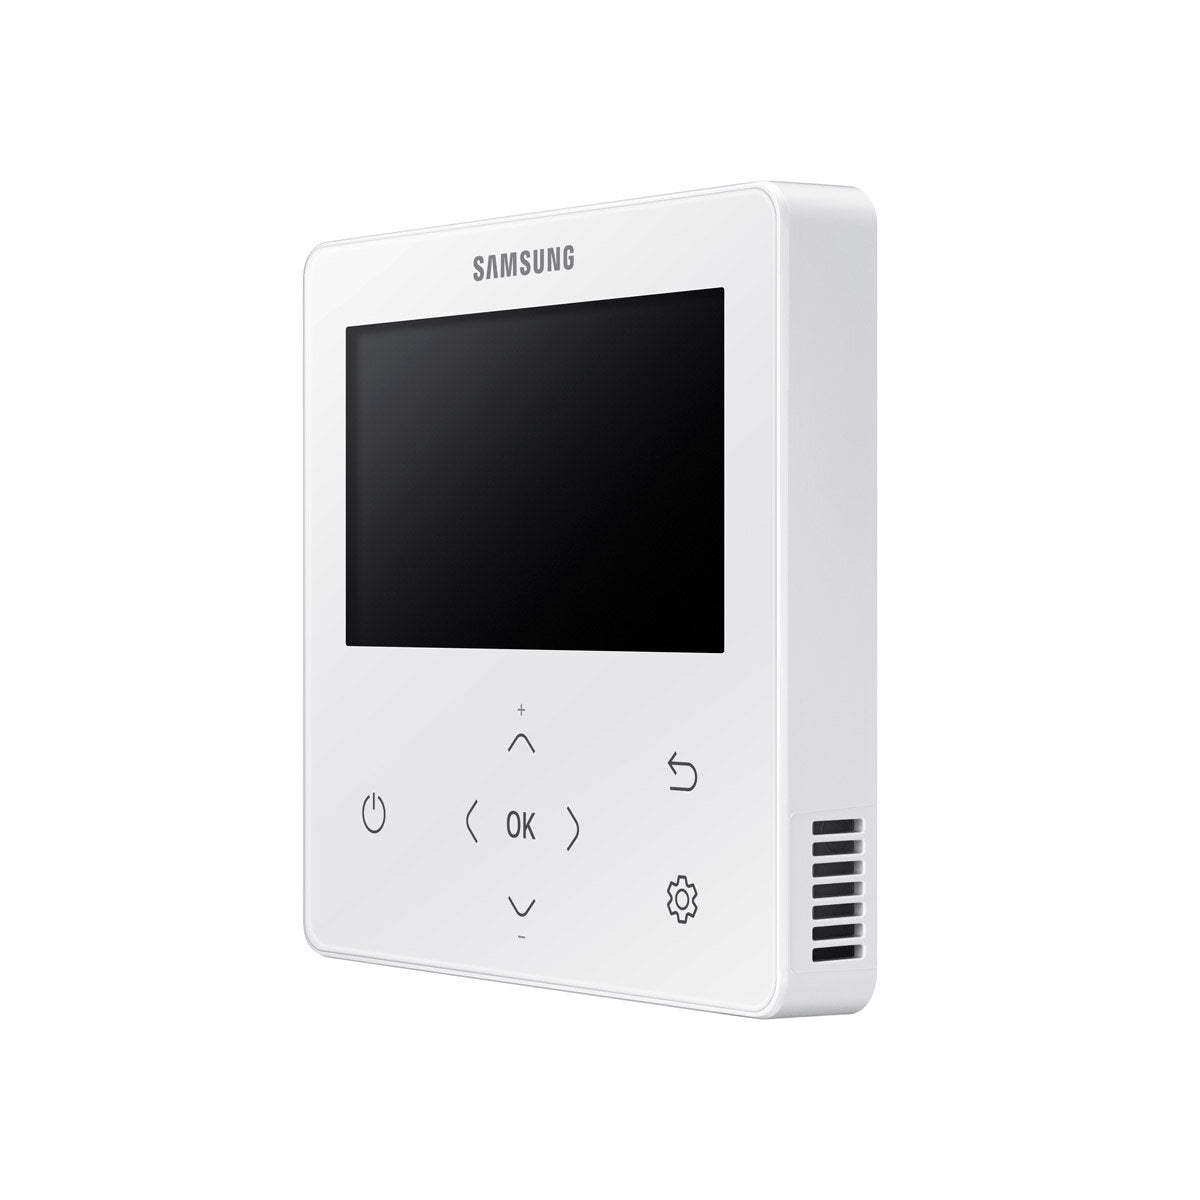 Samsung Air Conditioner Cassette WindFree 1 Way penta split 9000 + 9000 + 12000 + 12000 + 12000 BTU inverter A ++ outdoor unit 10.0 kW